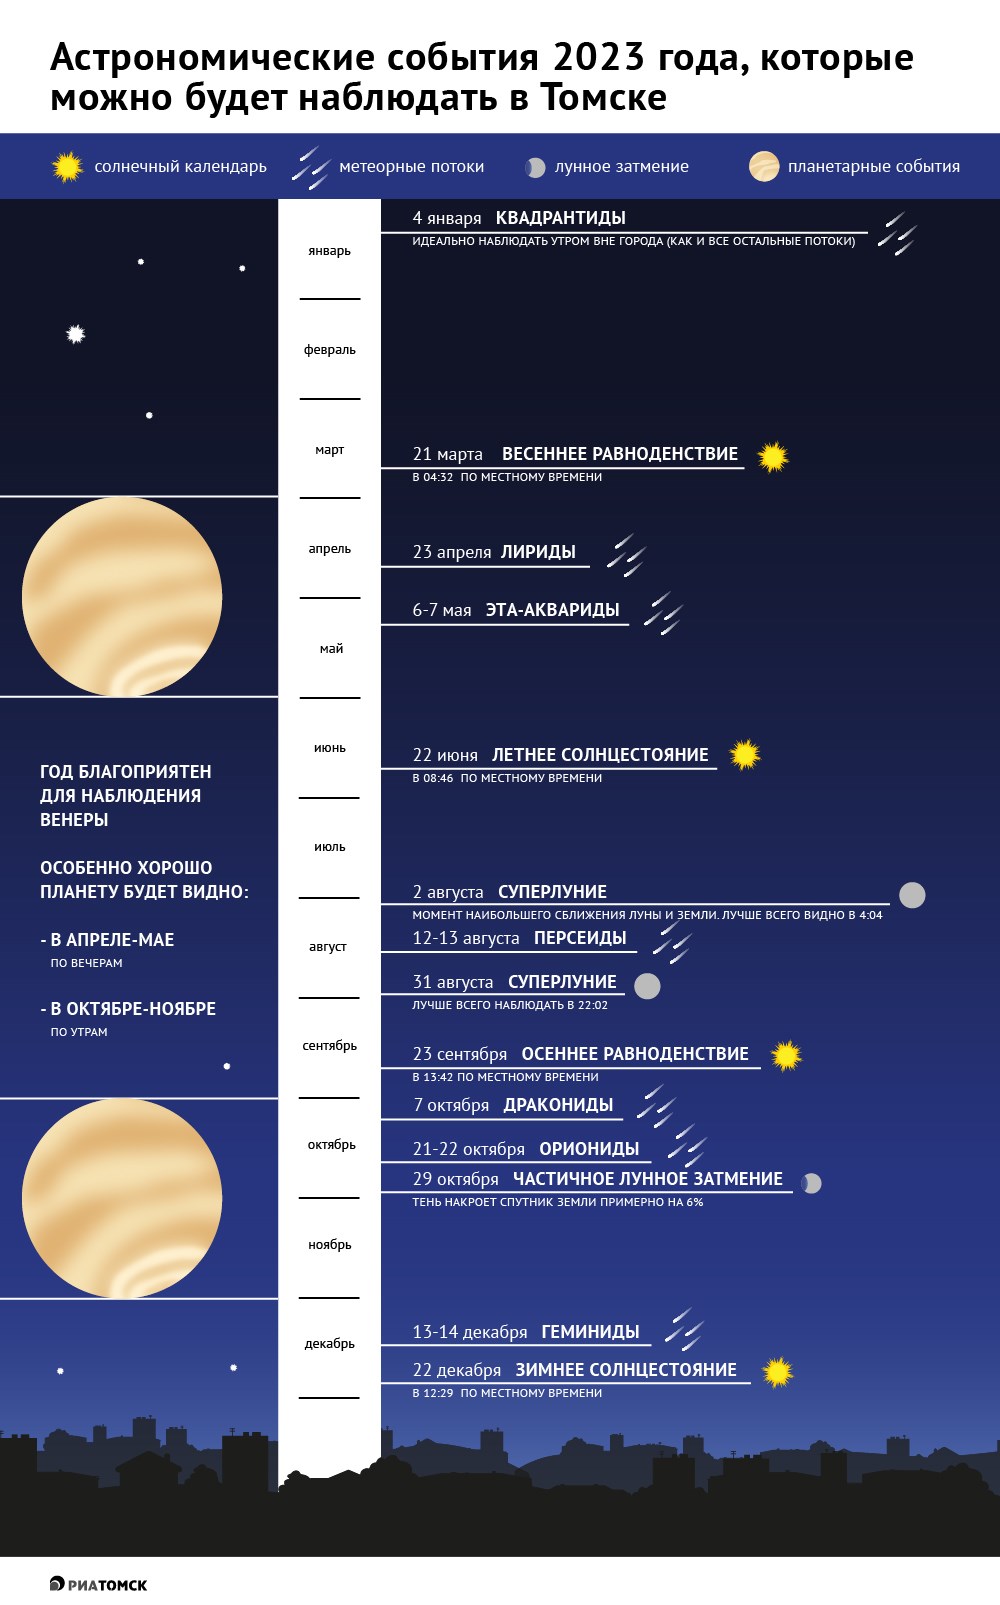 Наступивший 2023 год будет благоприятен для наблюдения Венеры, особенно хорошо планету будет видно из Томска весной и осенью. Также местных любителей астрономии ожидают частичное лунное затмение и ряд ярких звездопадов: Квадрантиды, Персеиды, Дракониды и другие. Подробнее – в инфографике РИА Томск.